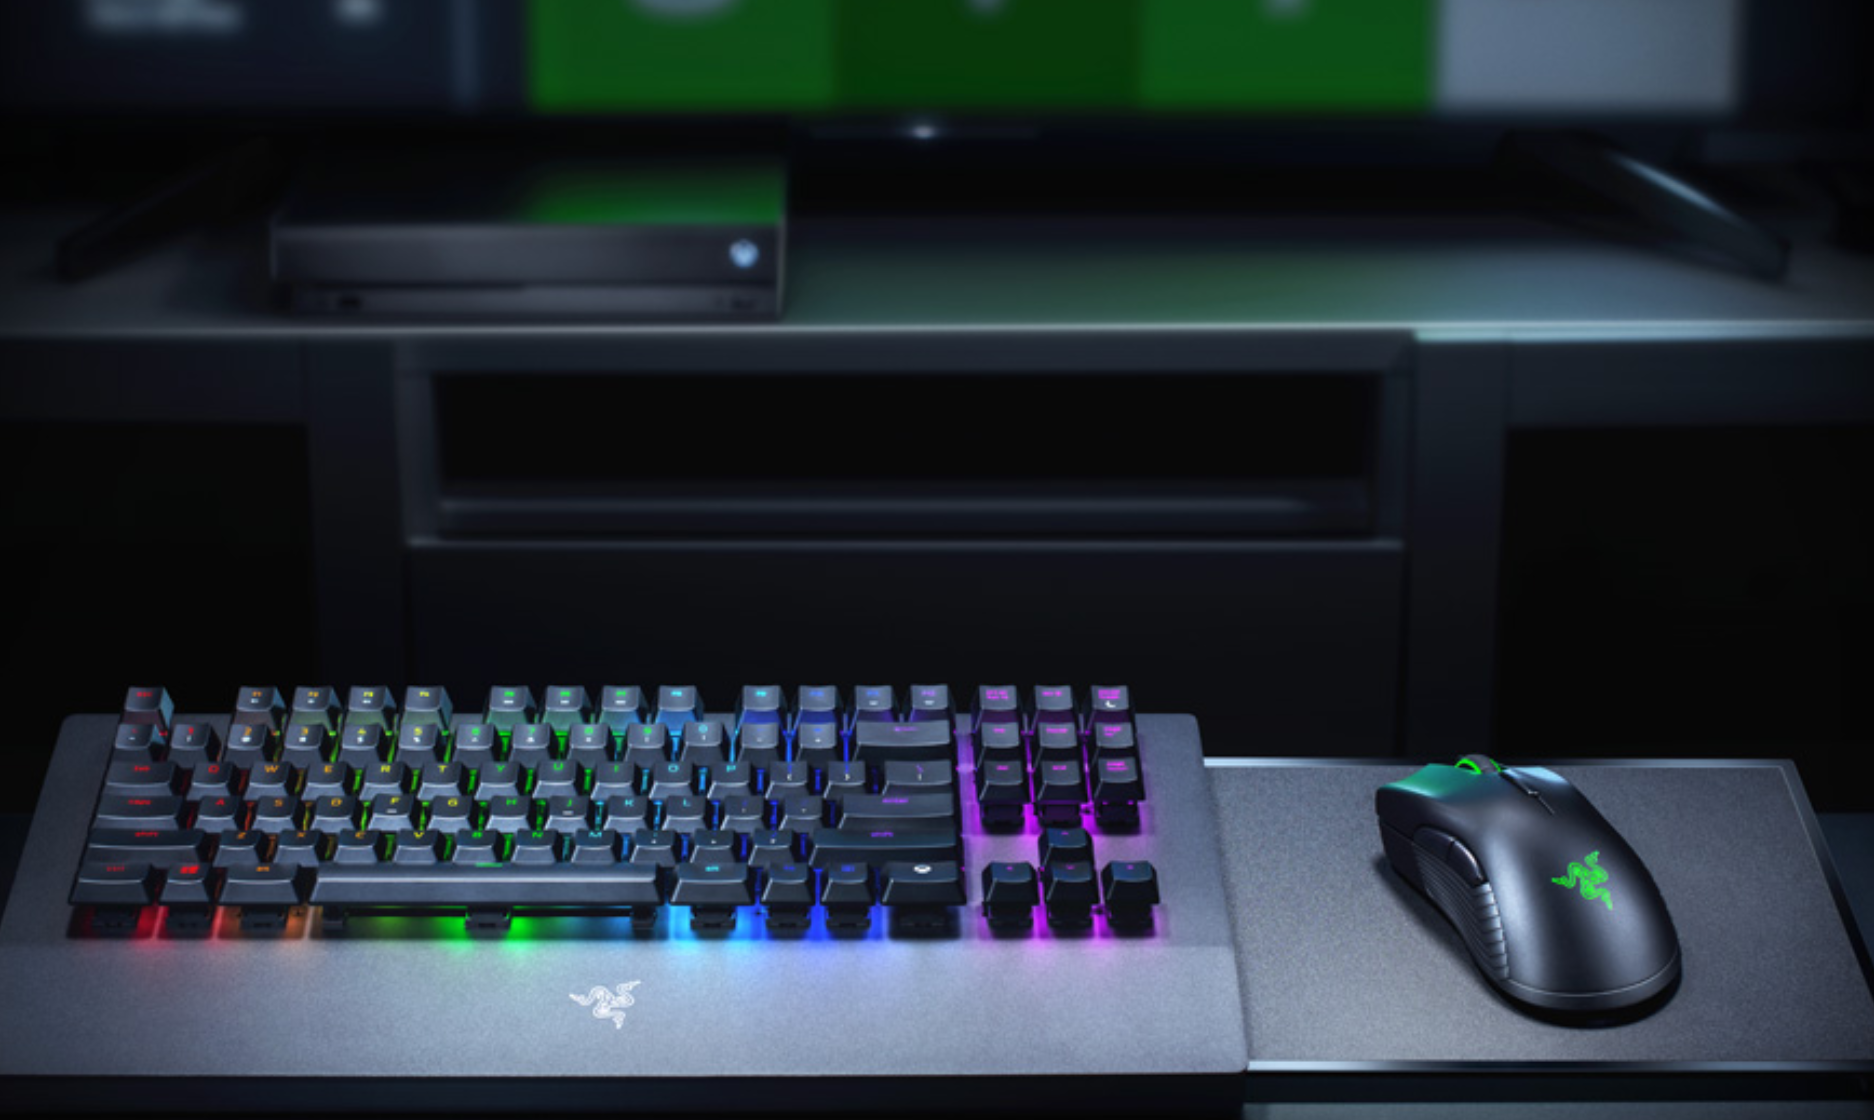 Xbox Oneにキーボードとマウスを繋いでみた つなぎ方ガイド Xbox Tips Wpteq